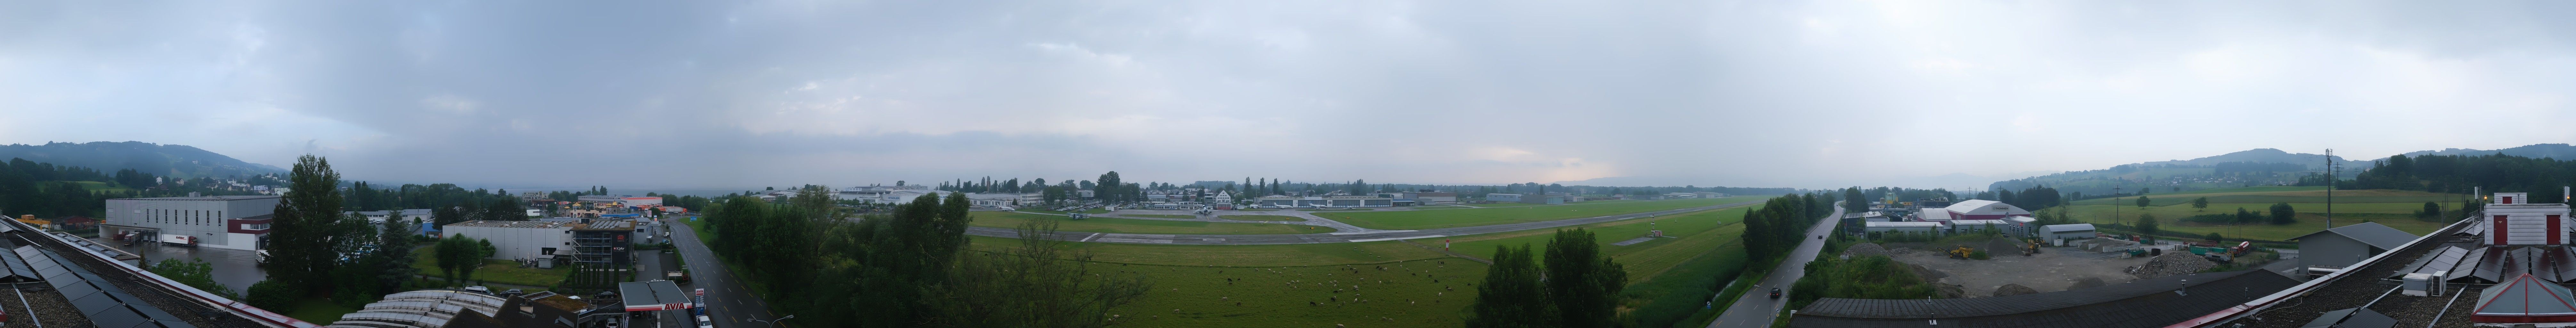 Thal: People's Airport St. Gallen - Altenrhein